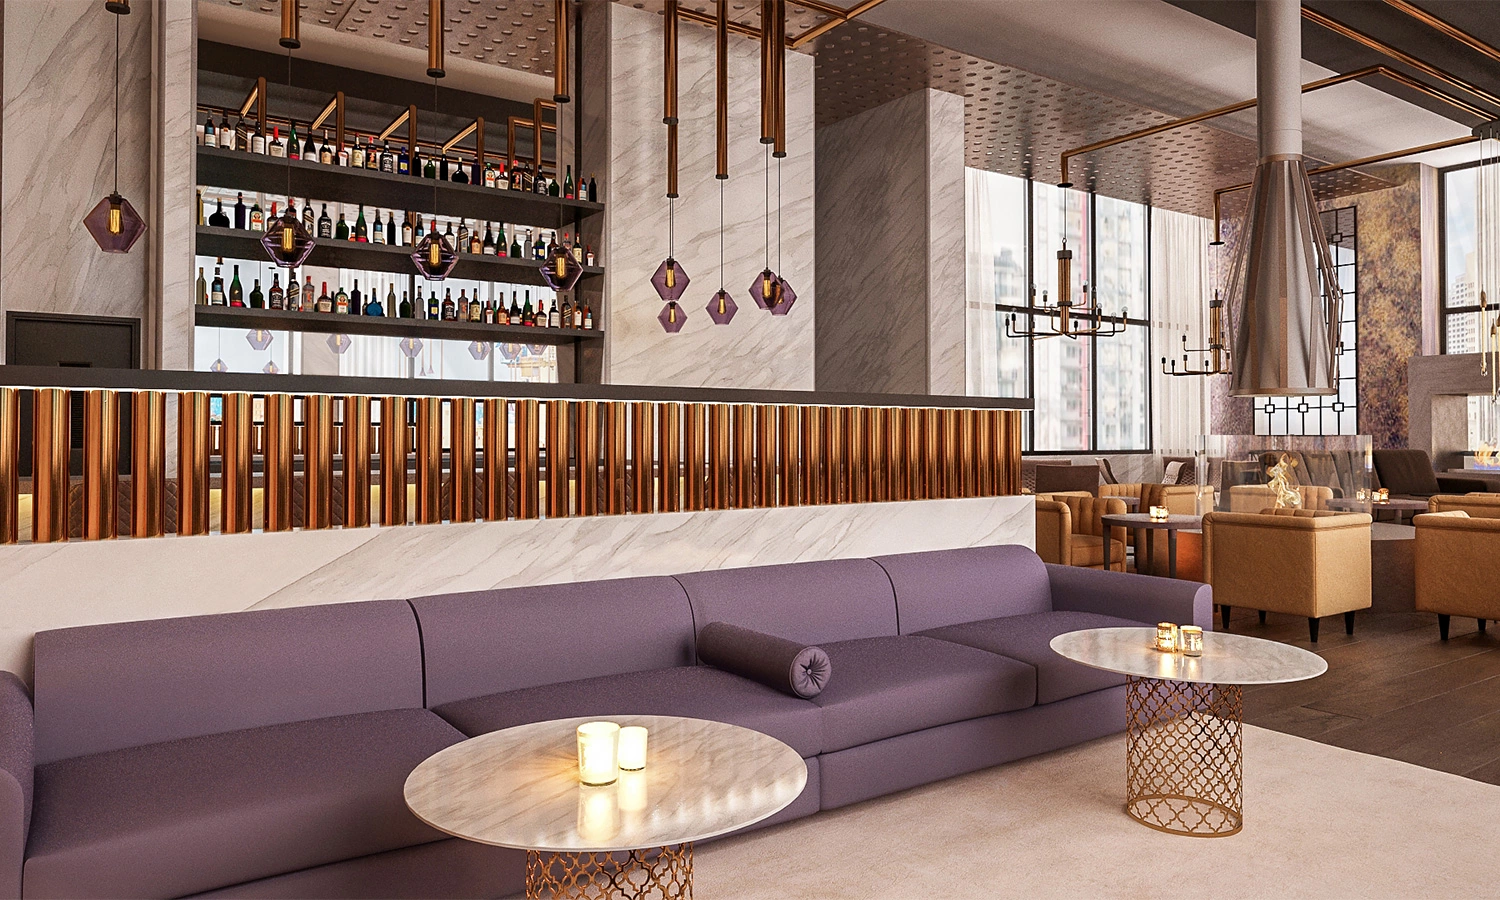 Lounge bar by Ariana Adireh, Bellevue interior designer